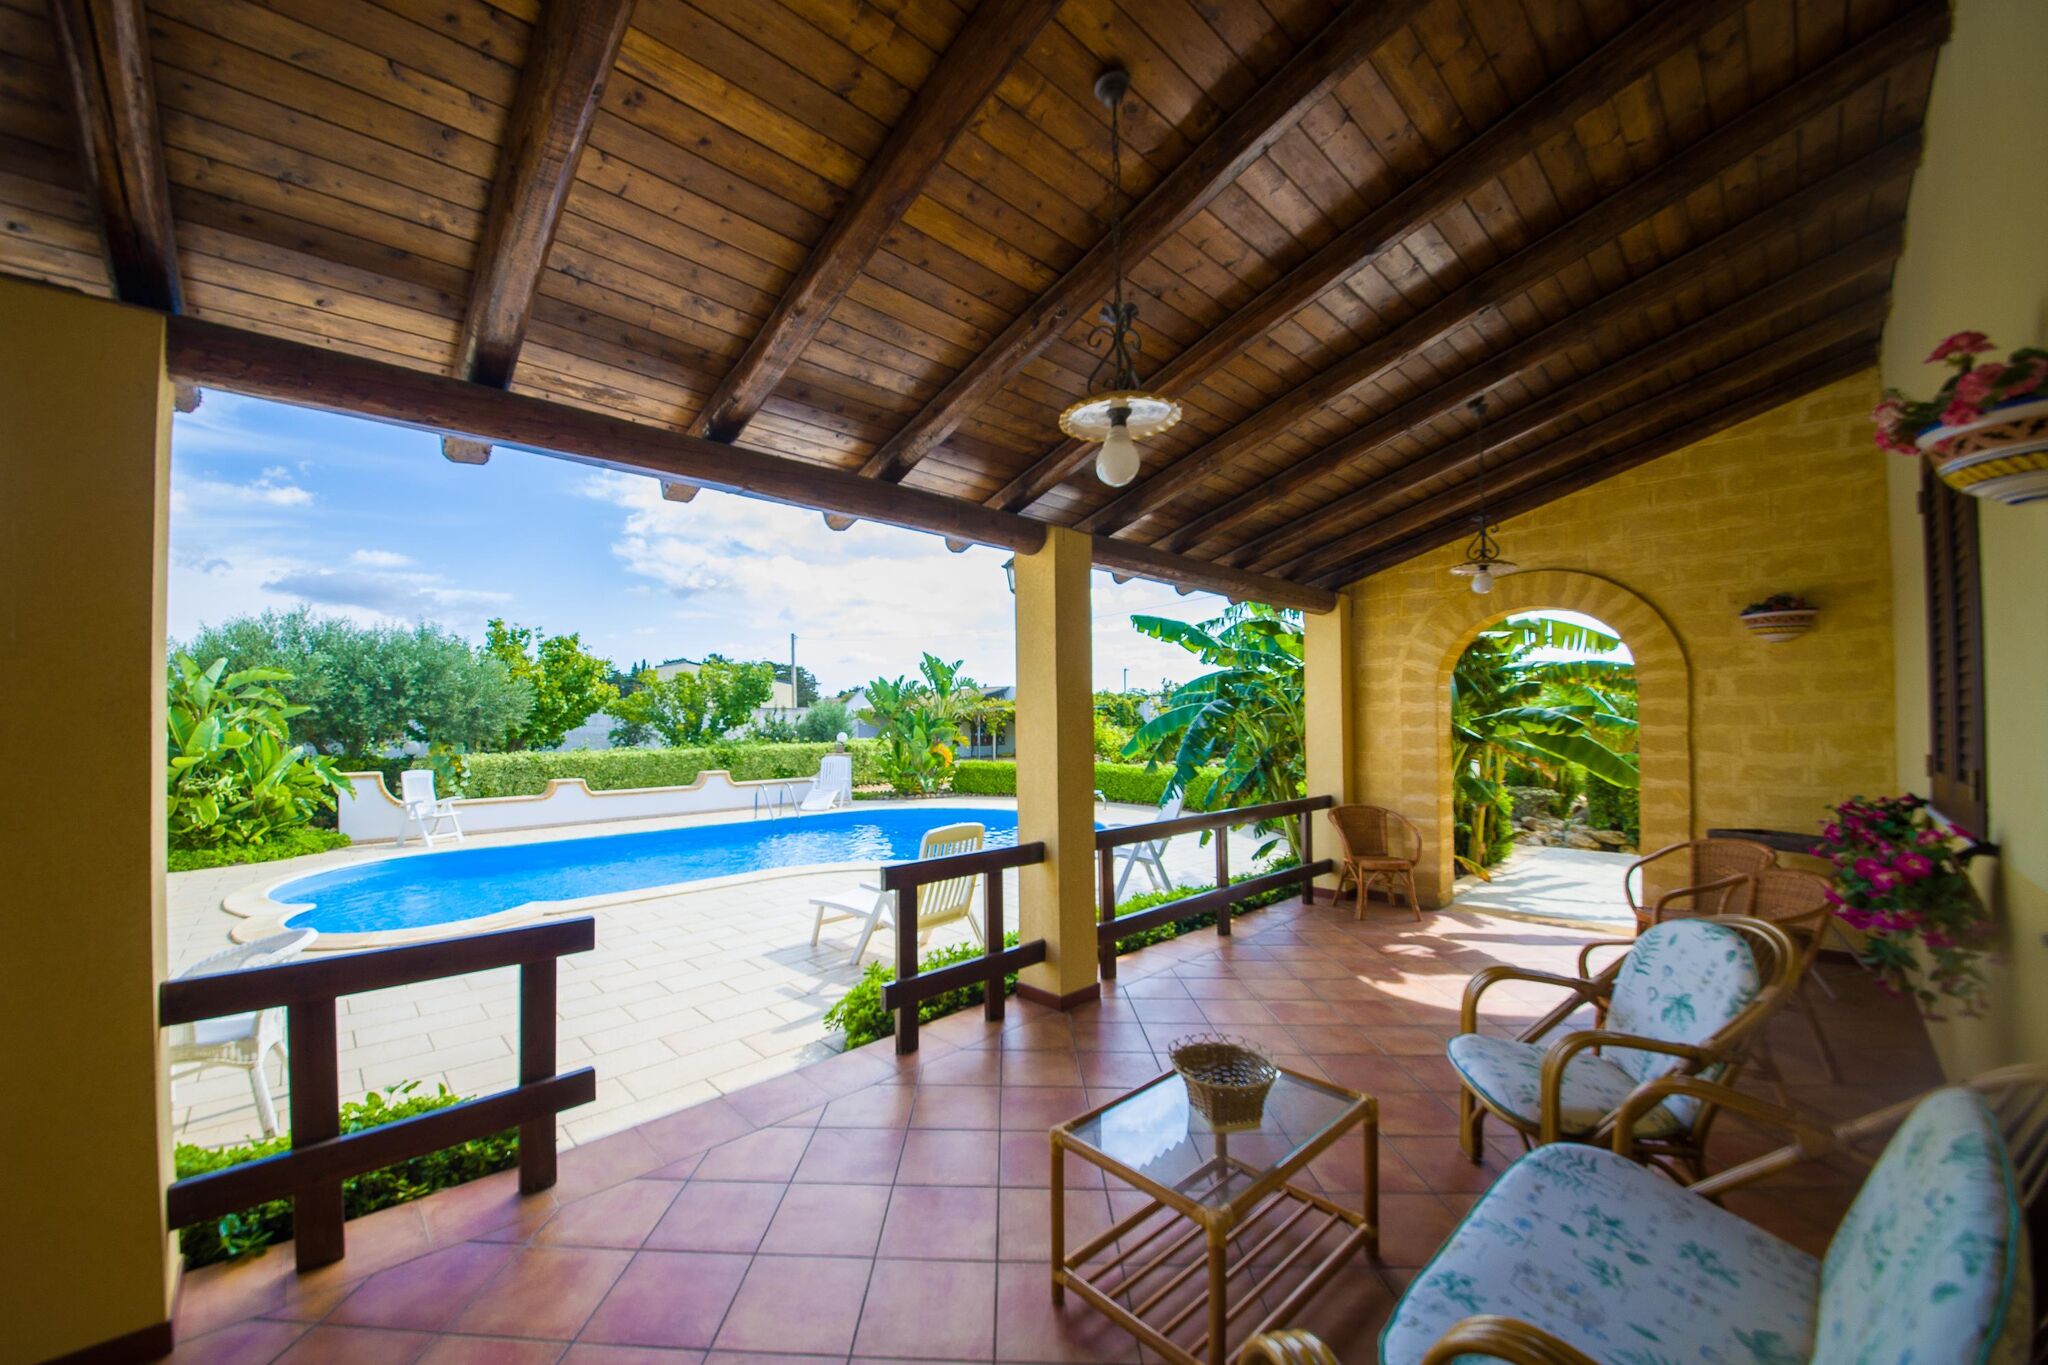 Schitterende villa in Mazara del Vallo met zwembad